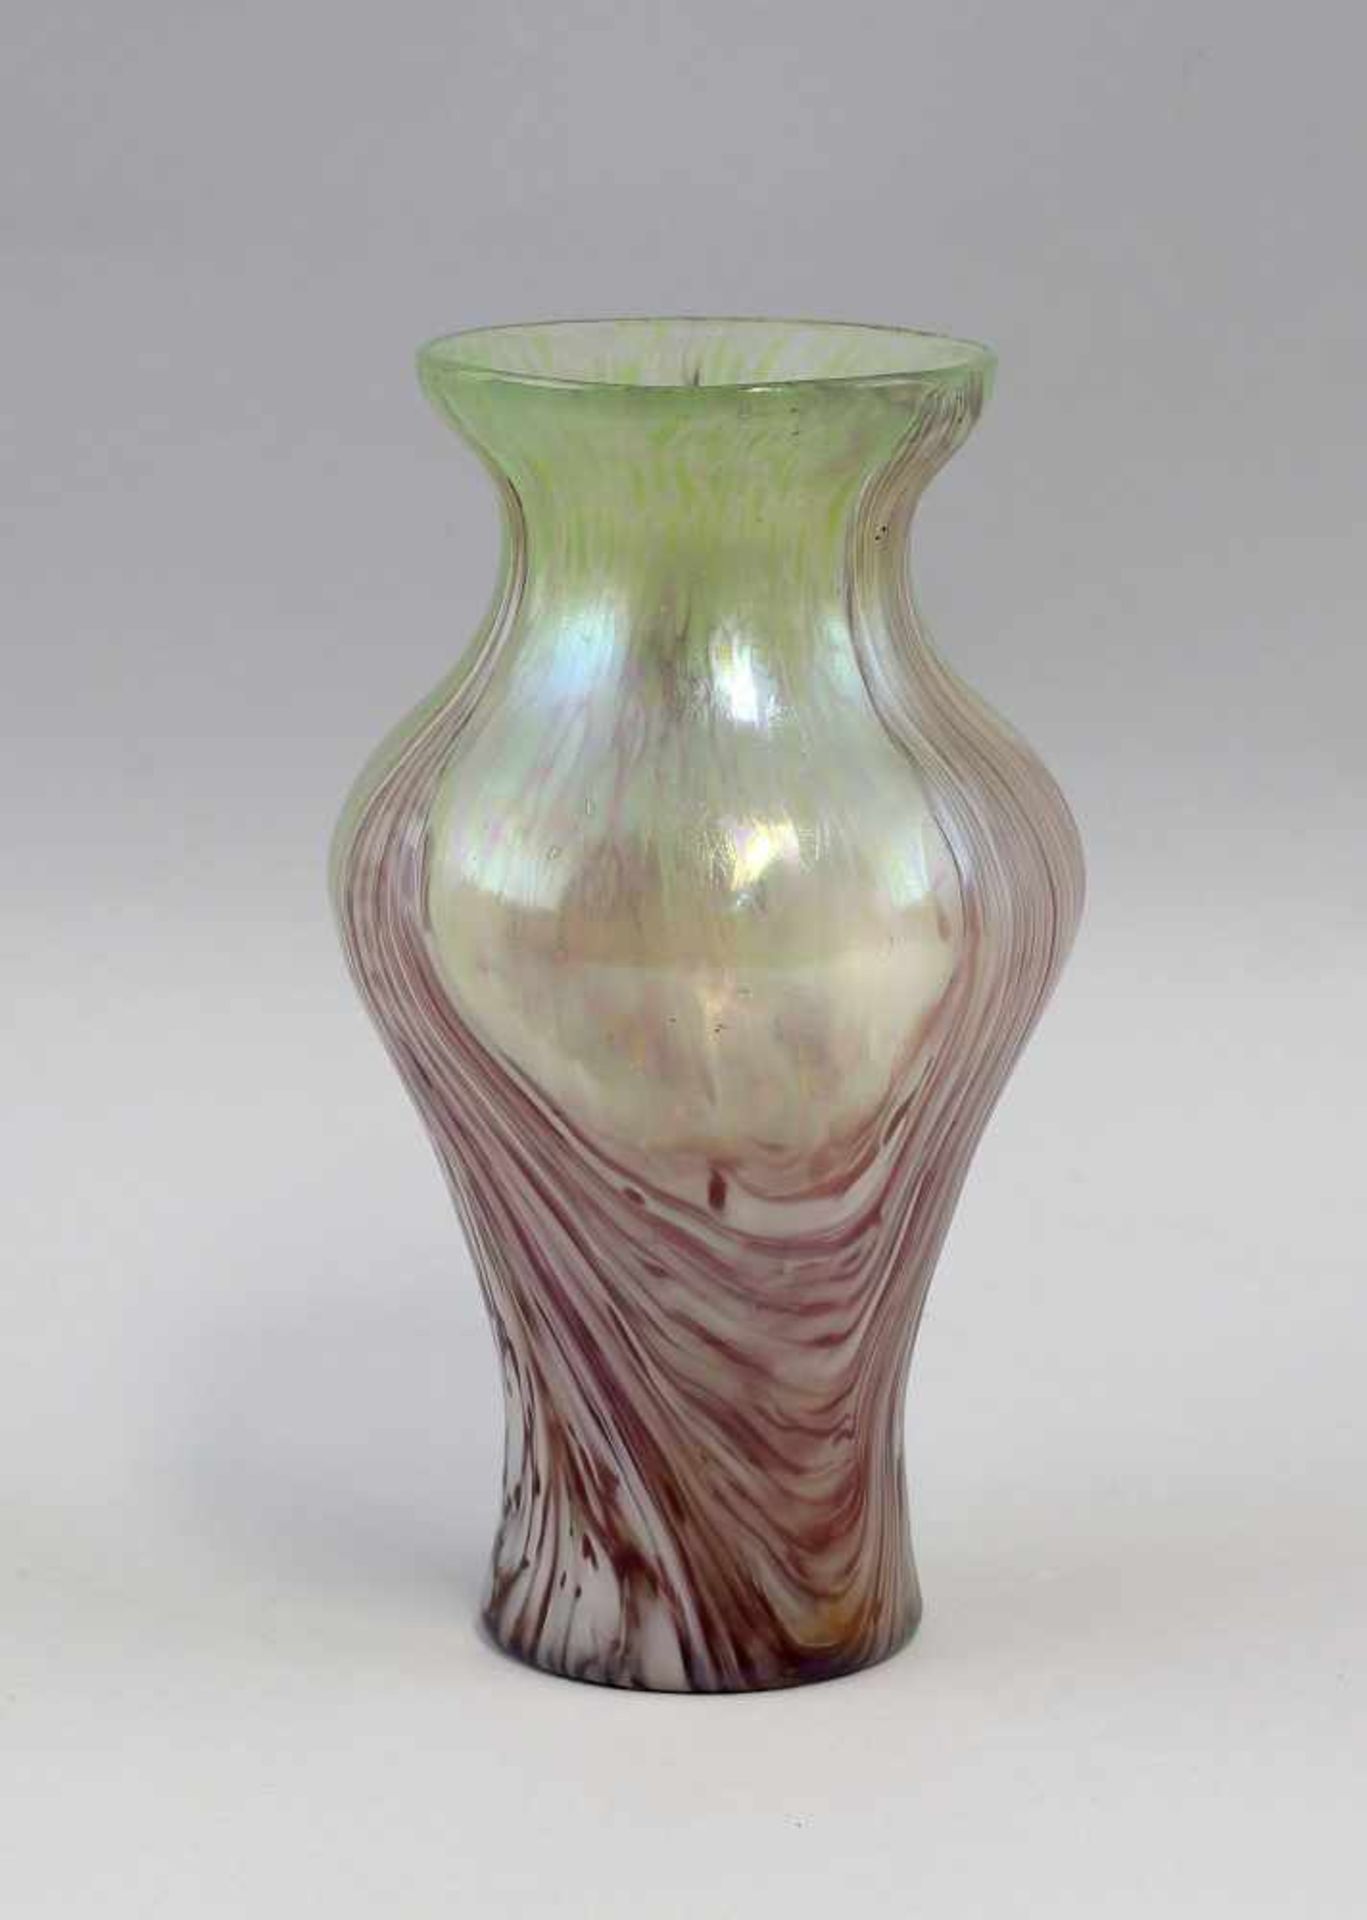 Vase Jugendstil Böhmenum 1900, farbloses Glas mit partiell eingearbeiteten hellgrünen Glaskröseln,